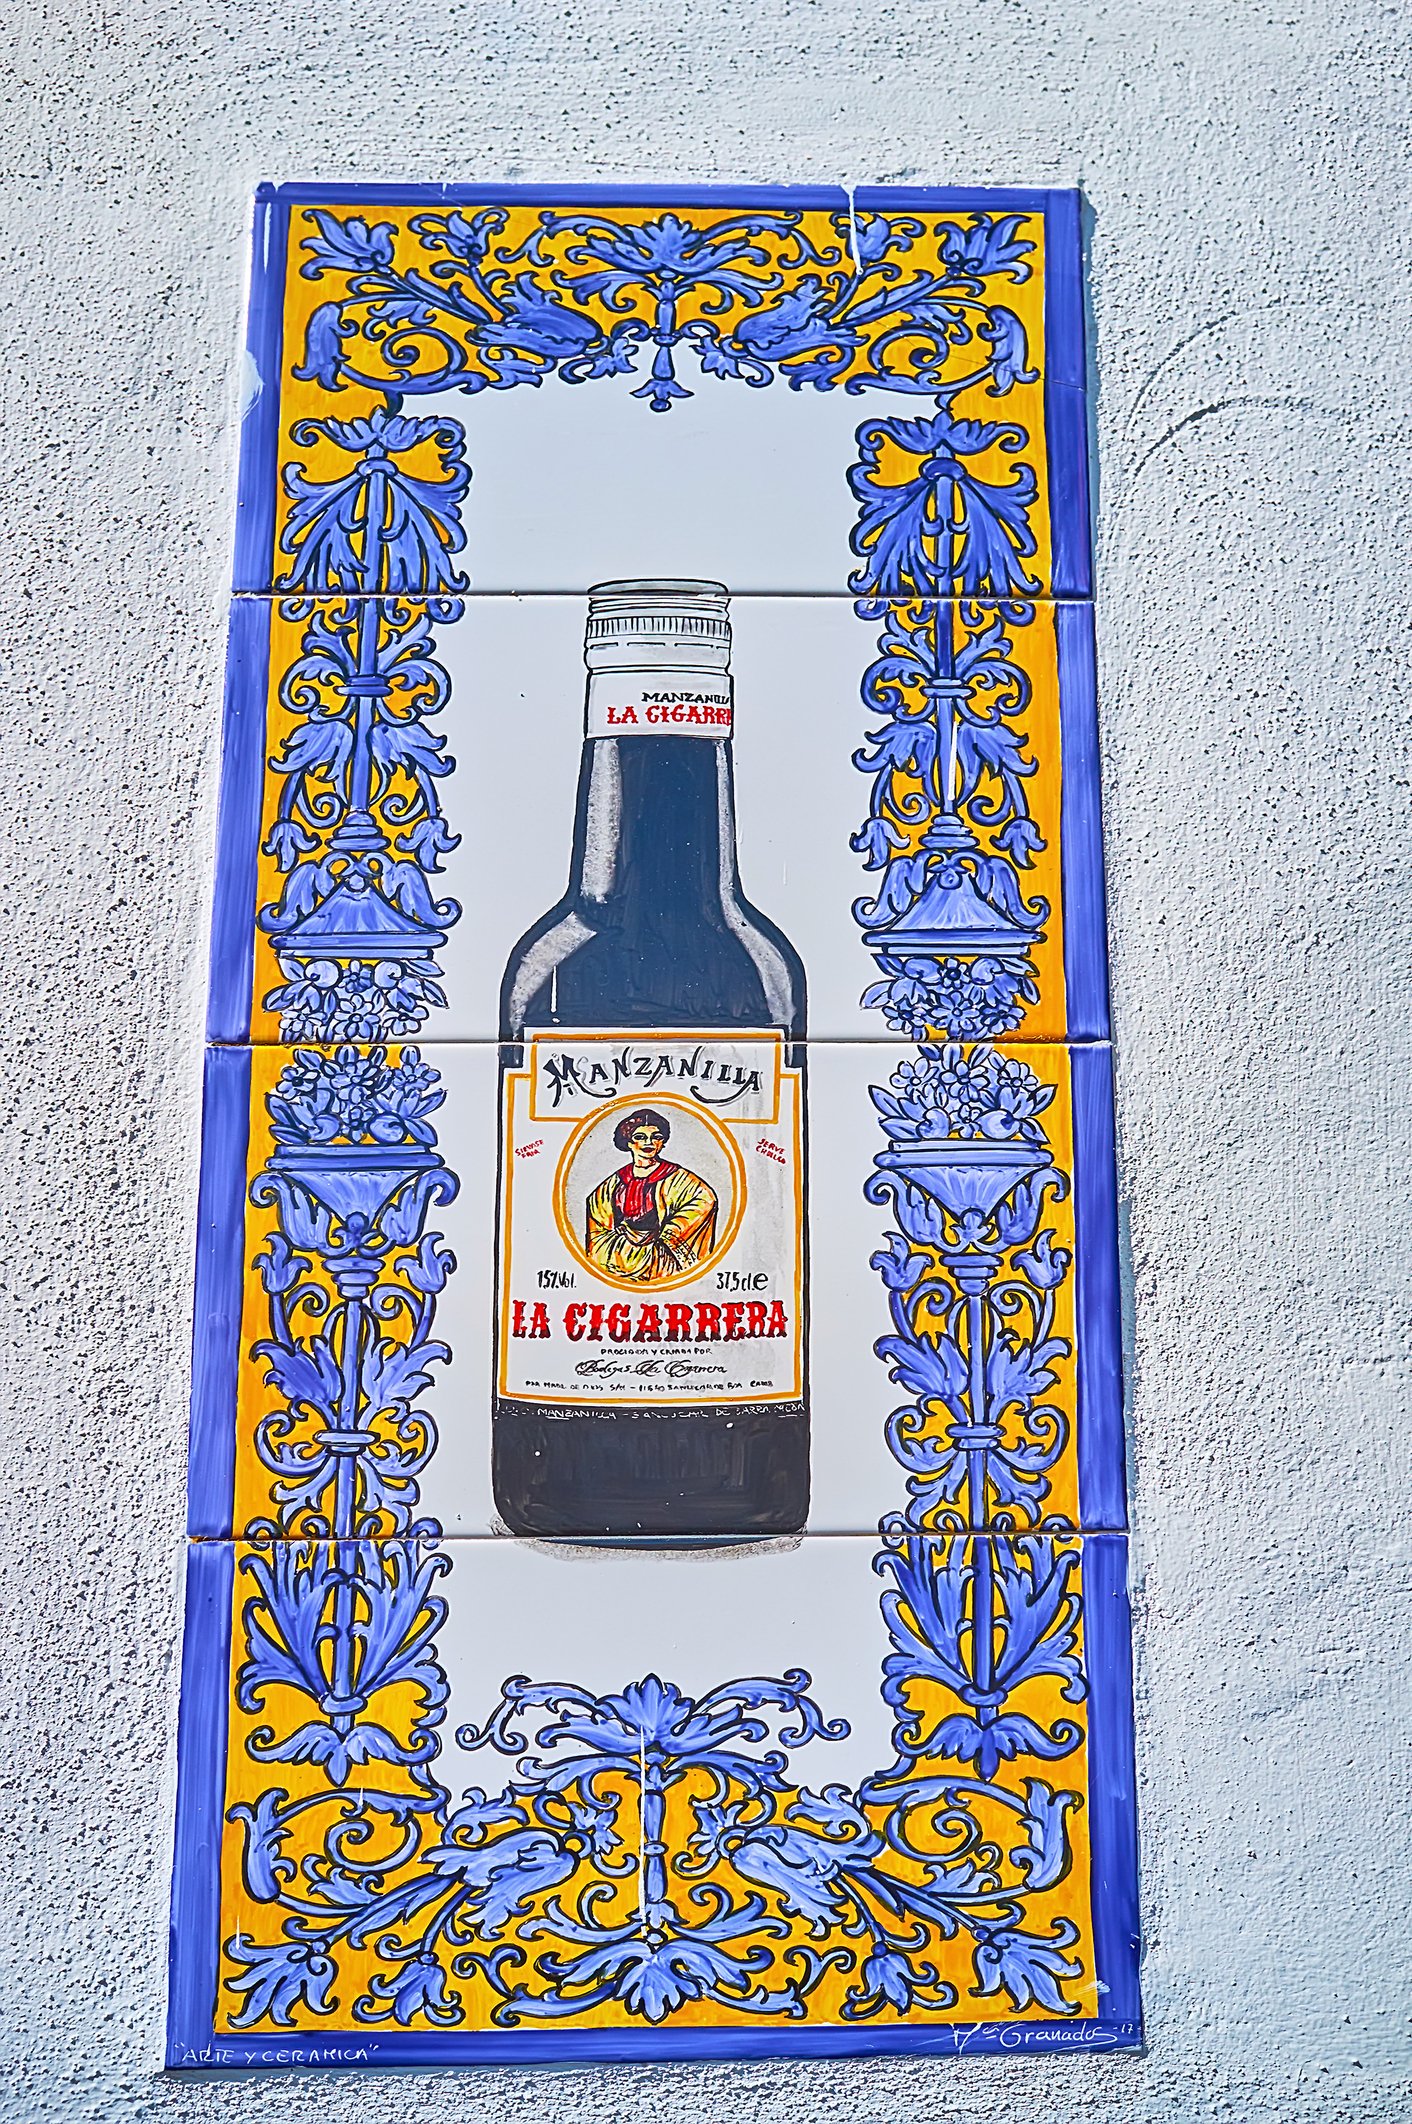 Manzanilla Sherry wine bottle of Bodegas La Cigarrera